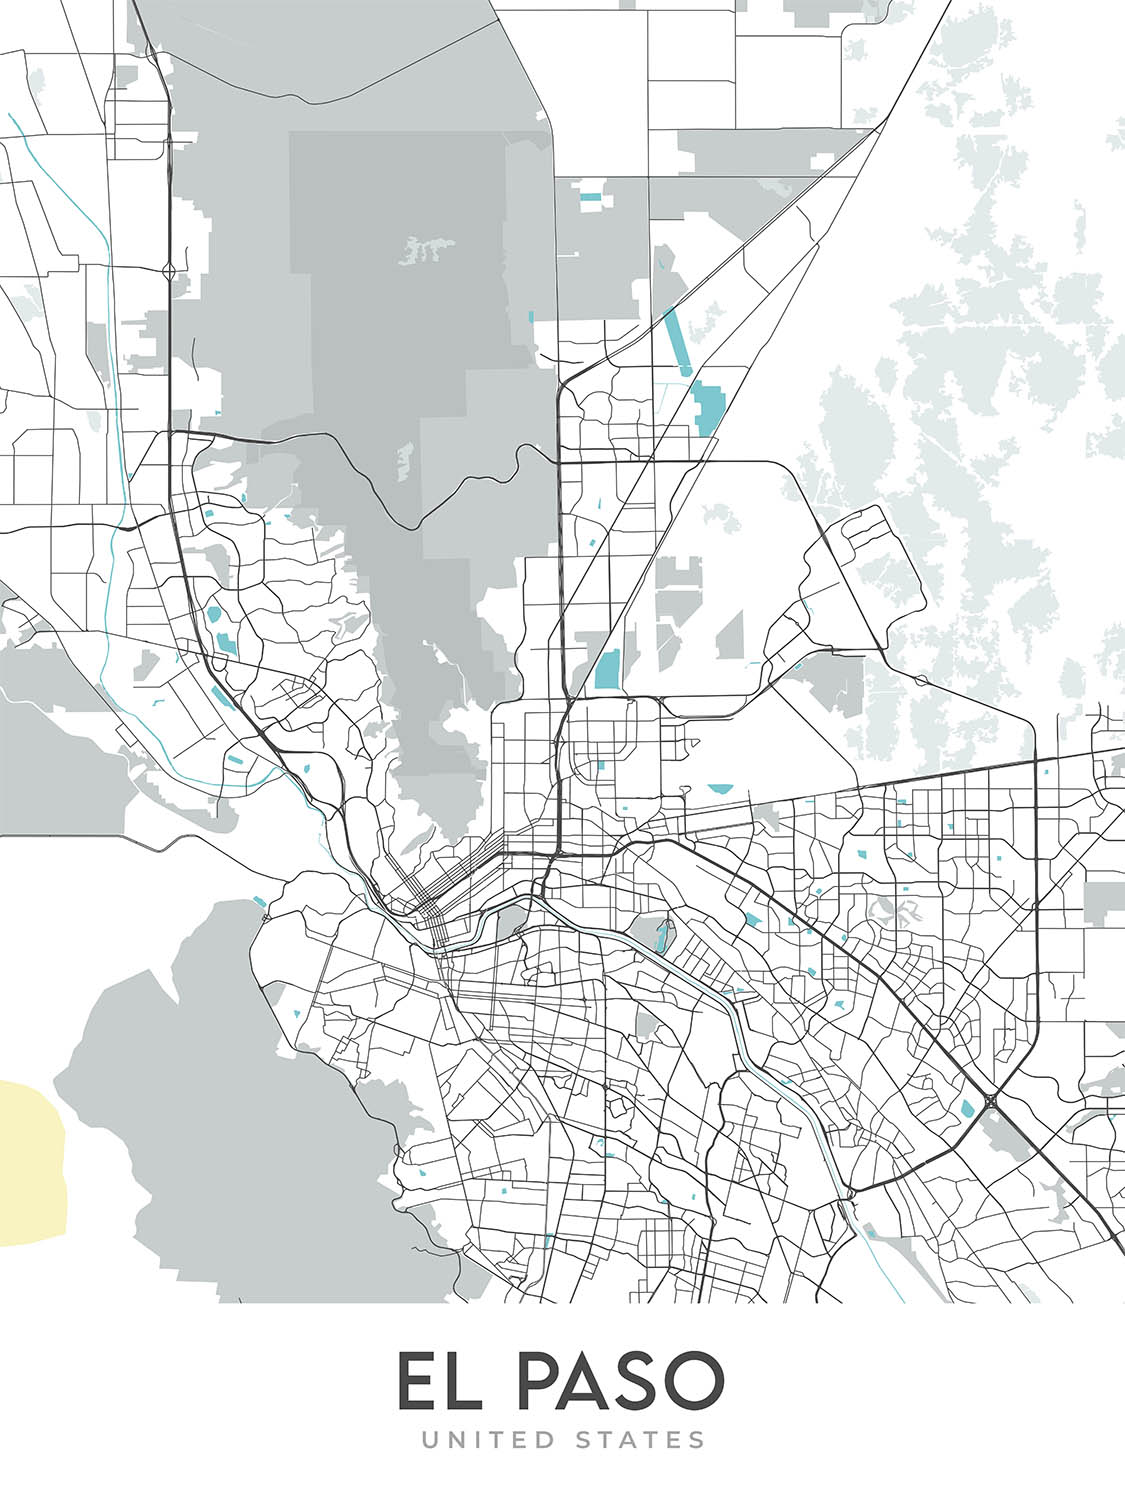 Moderner Stadtplan von El Paso, TX: Innenstadt, UTEP, Franklin Mountains, I-10, US-54